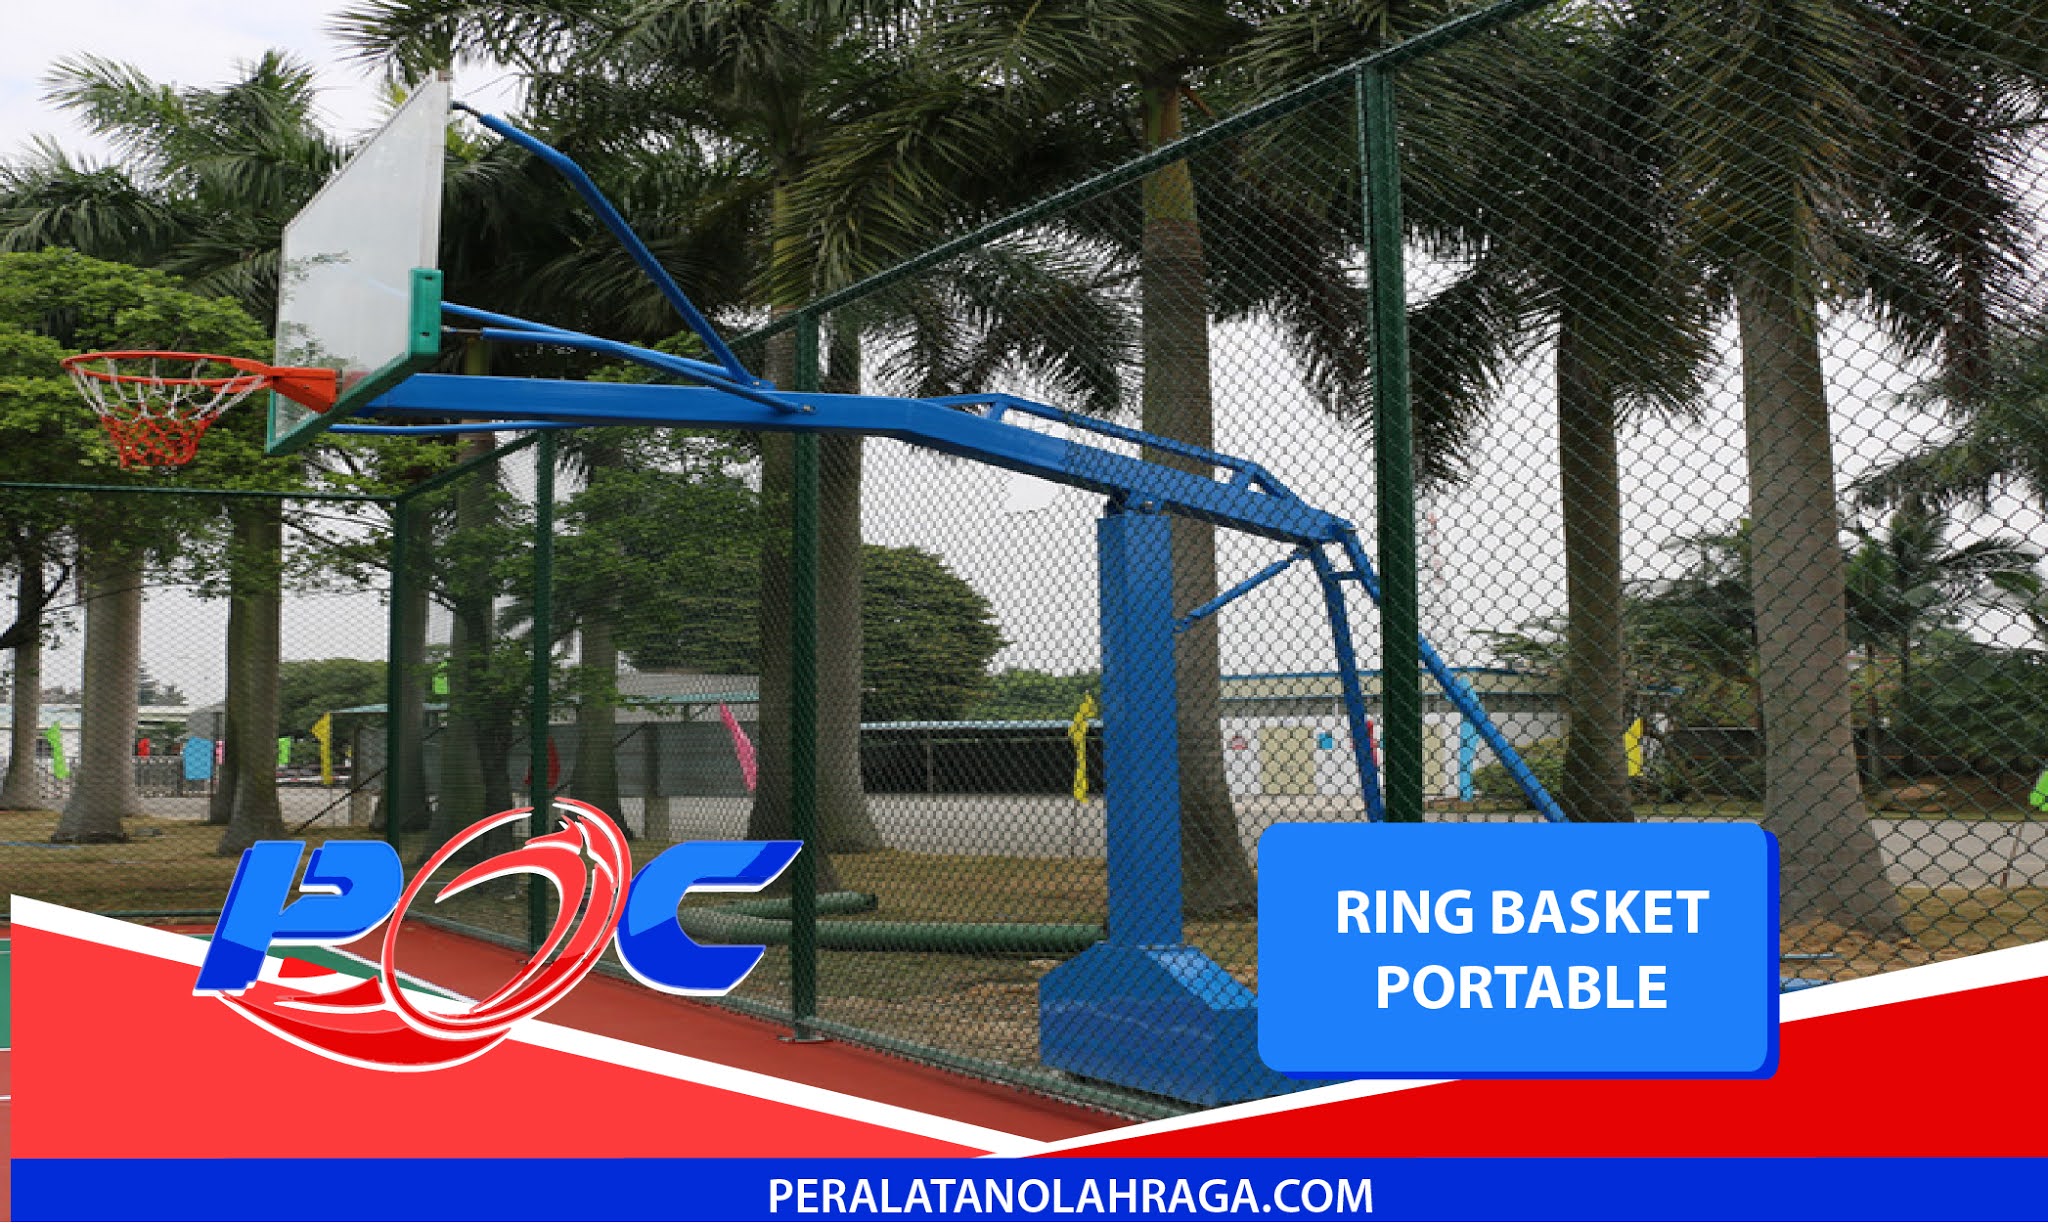 Ring basket portable